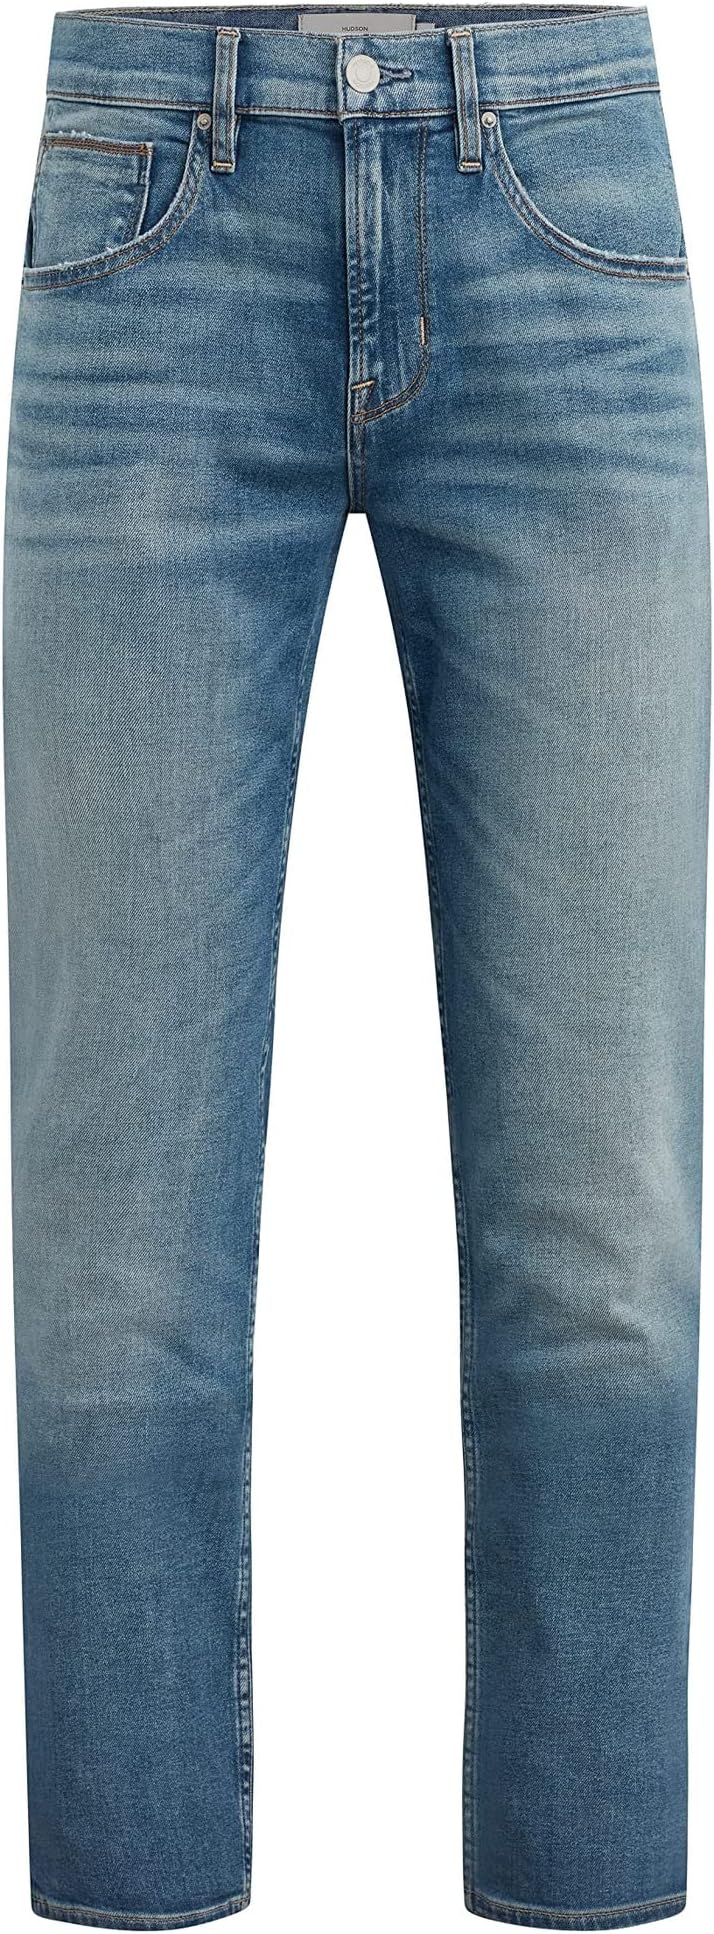 цена Джинсы Byron Straight in Bayview Hudson Jeans, цвет Bayview